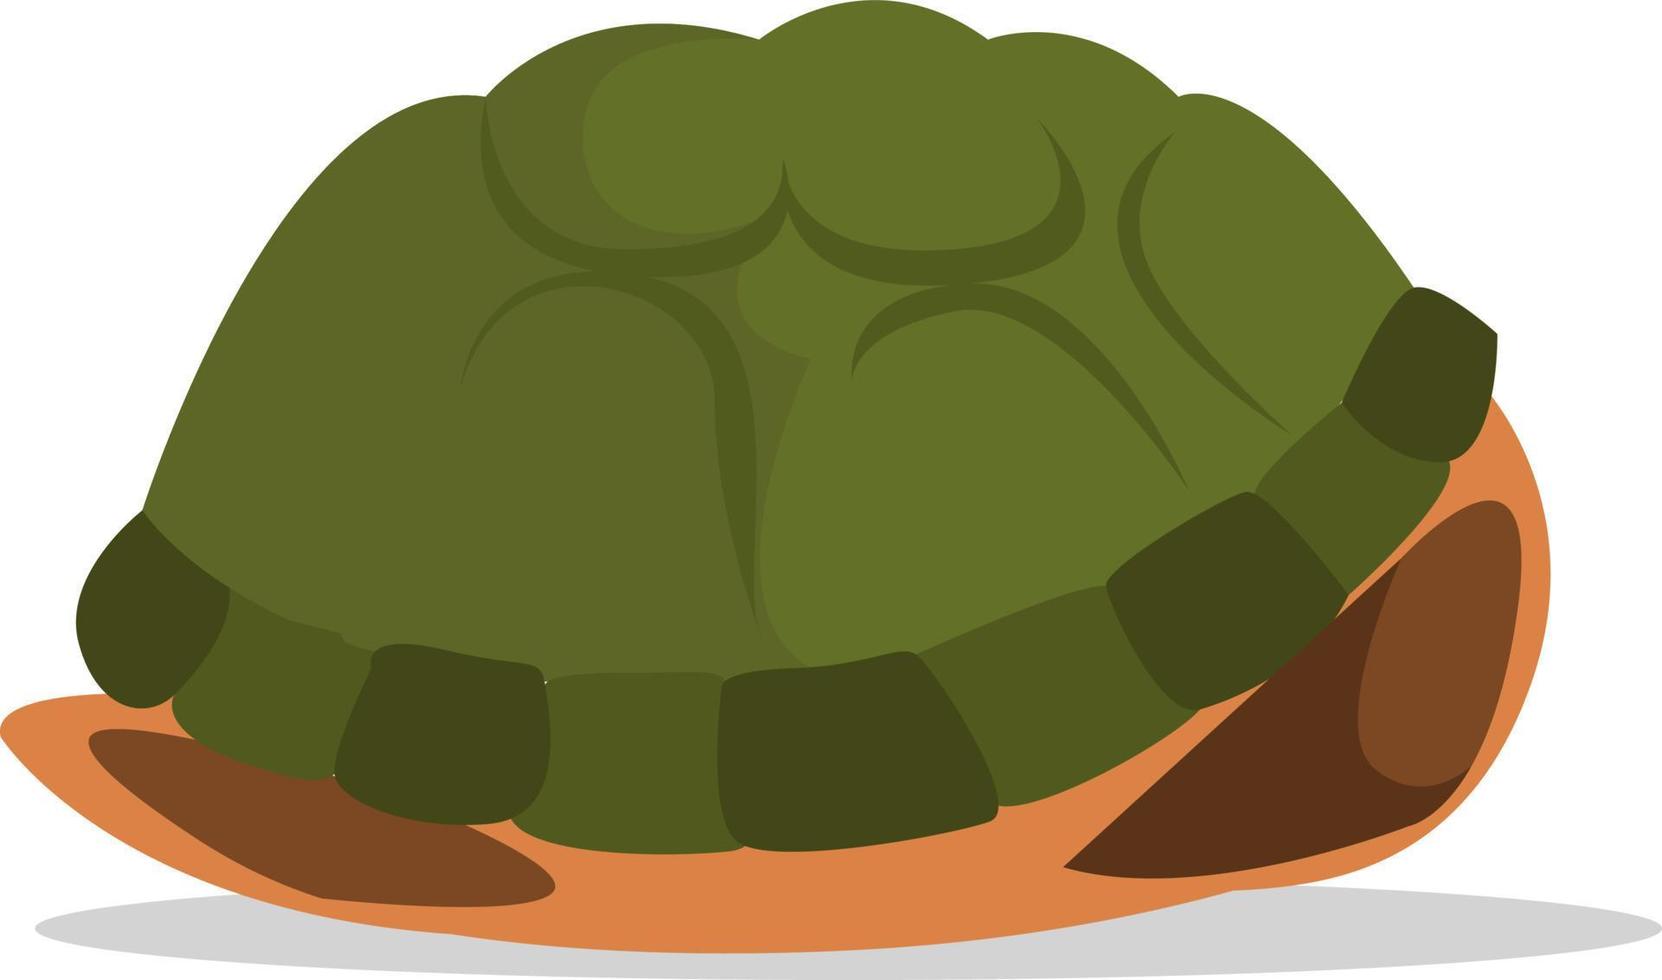 Carapace de tortues, illustration, vecteur sur fond blanc